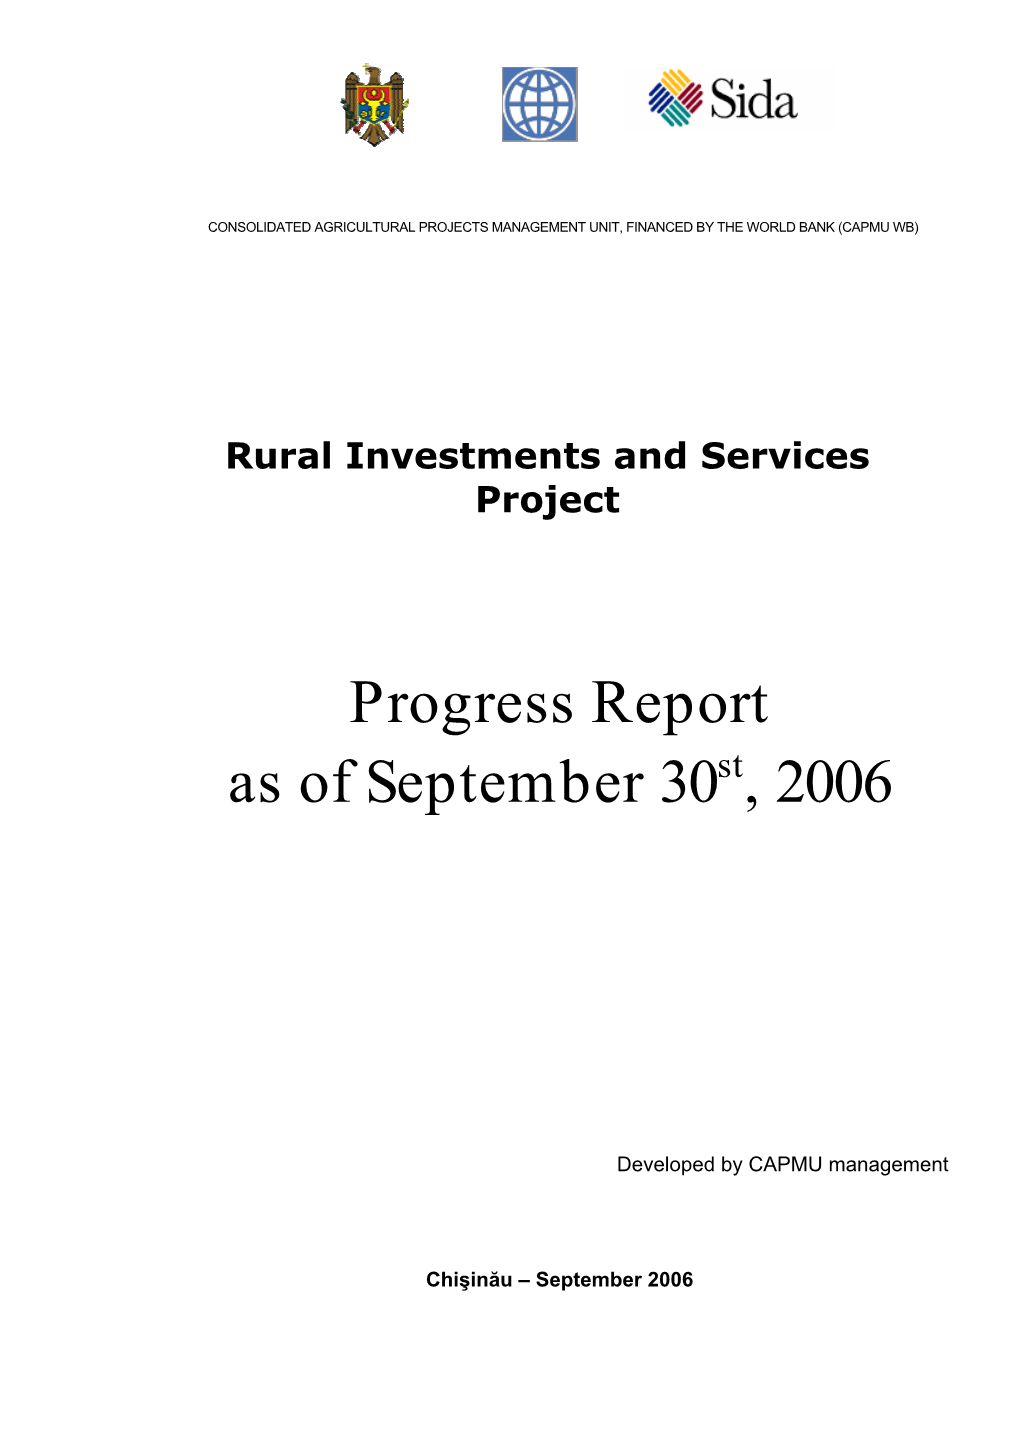 Progress Report As of September 30St, 2006